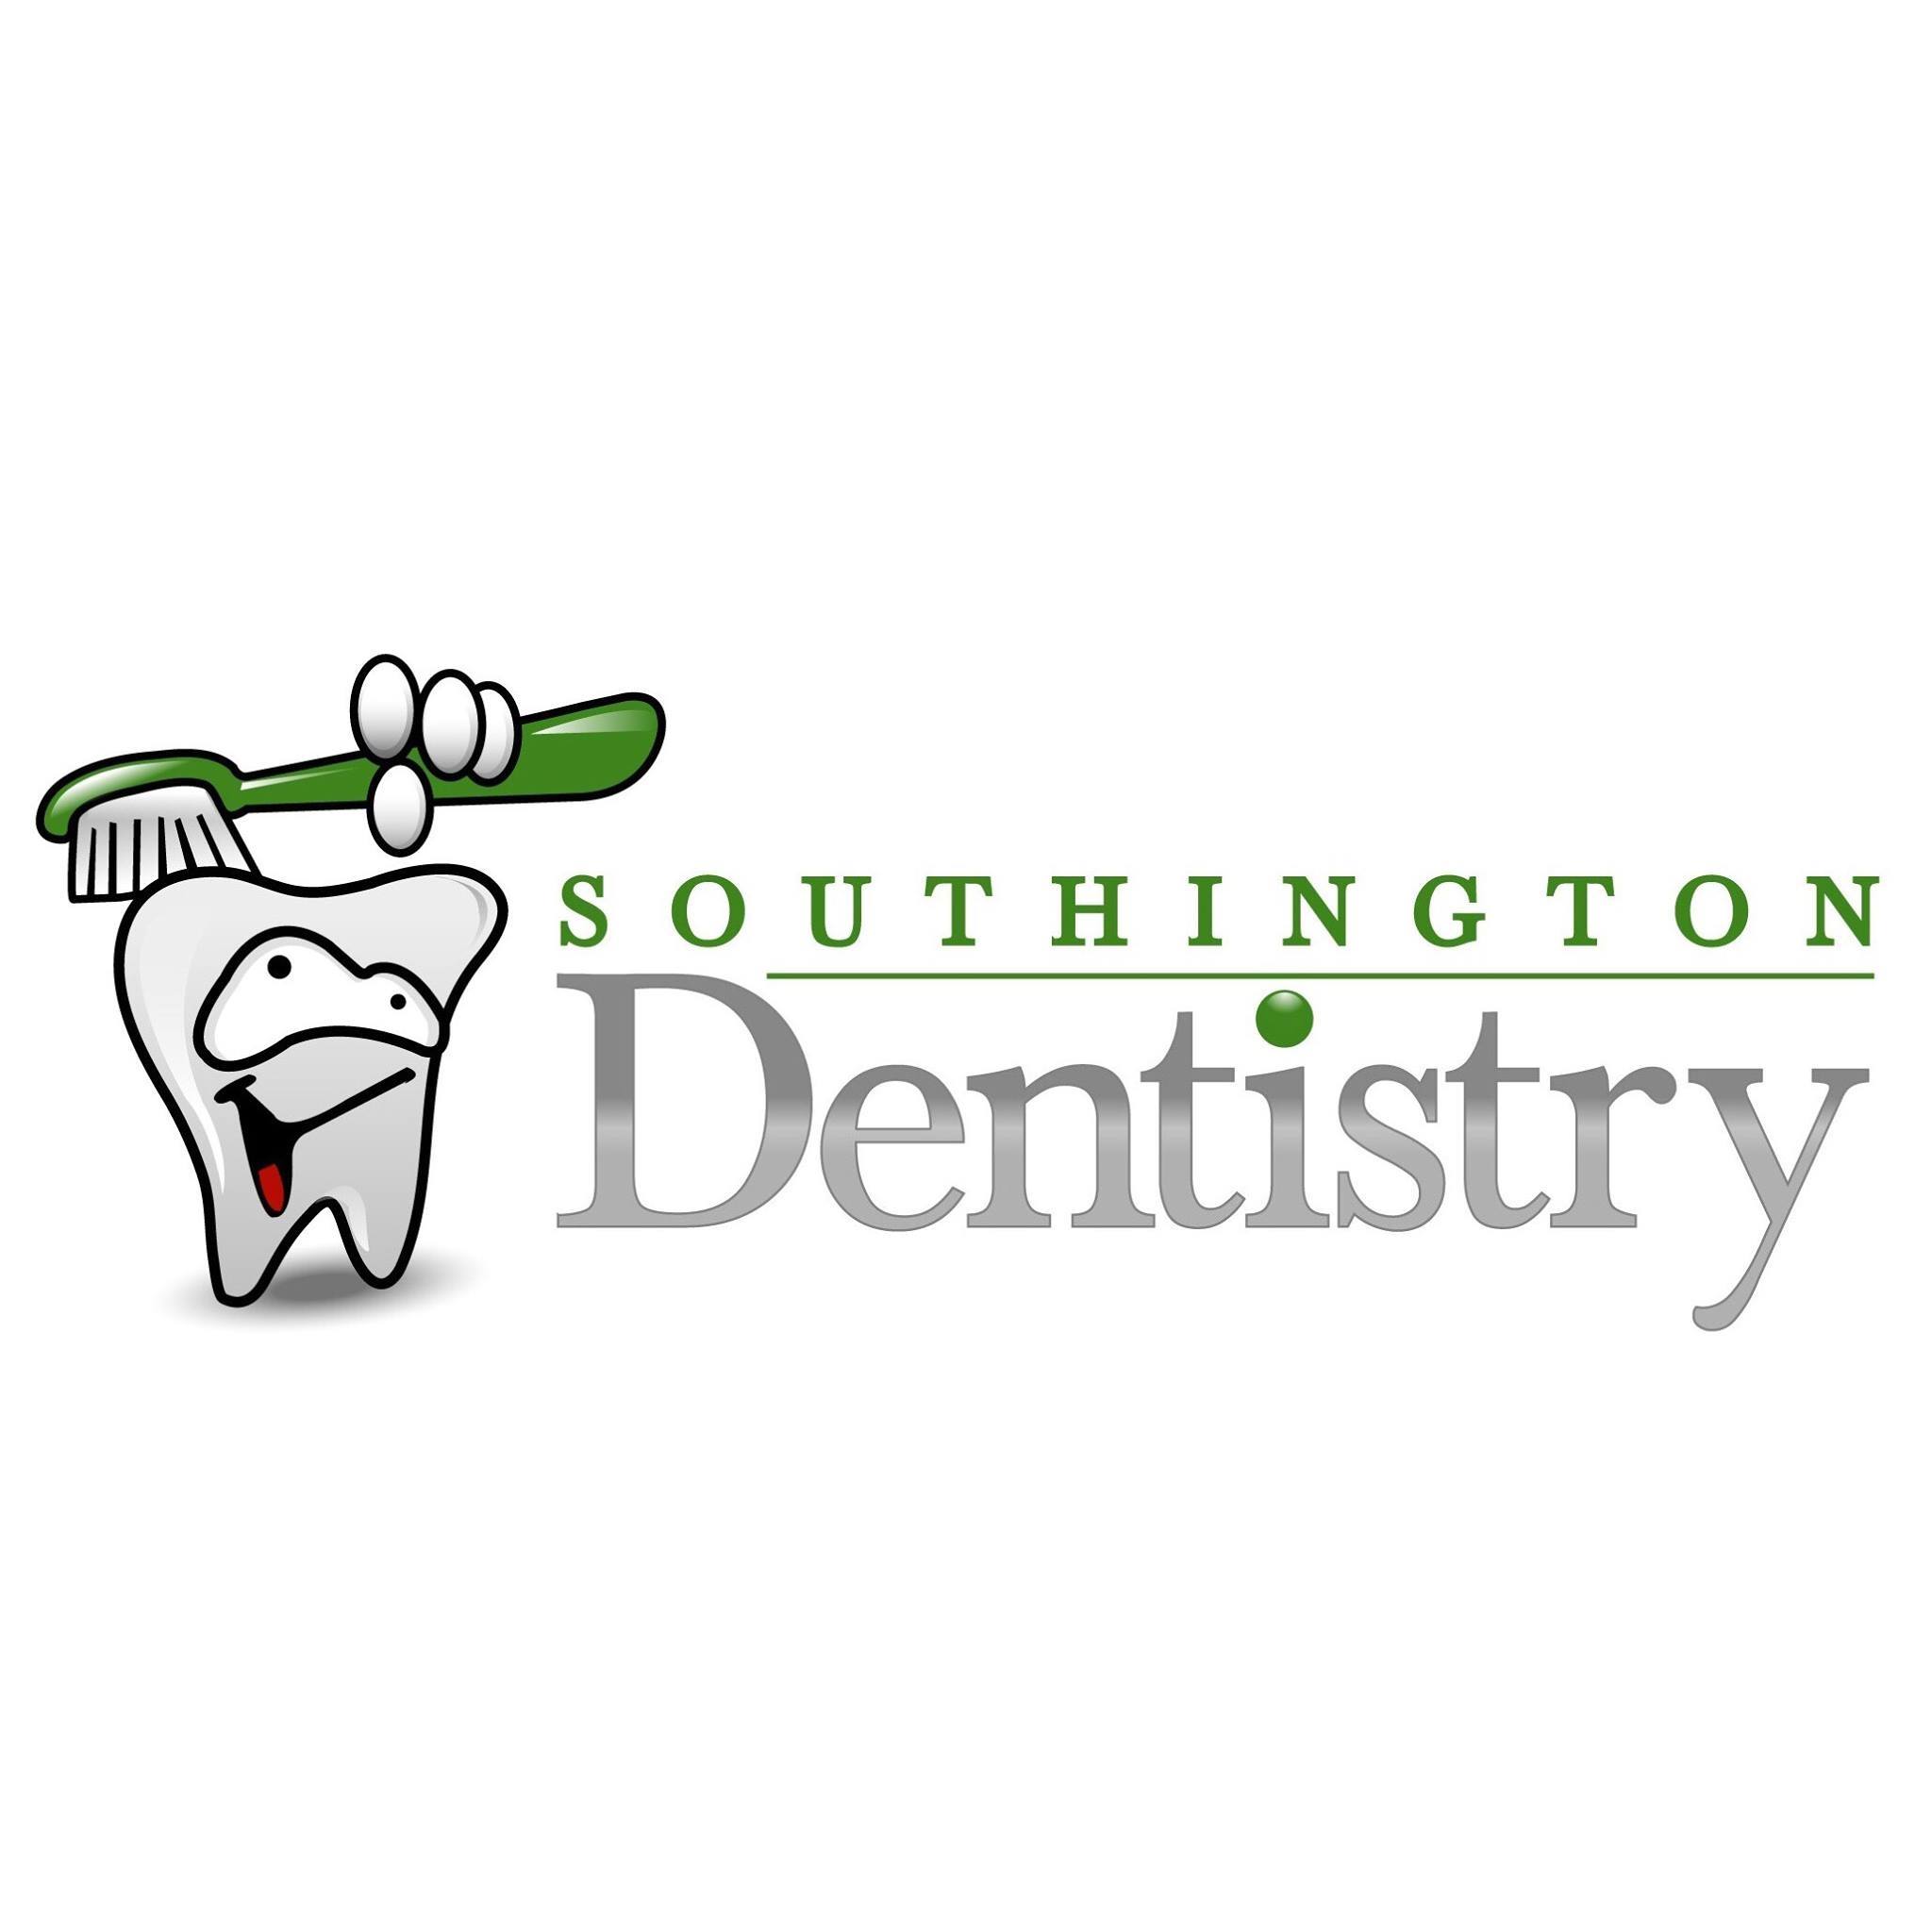 Company logo of Southington Dentistry